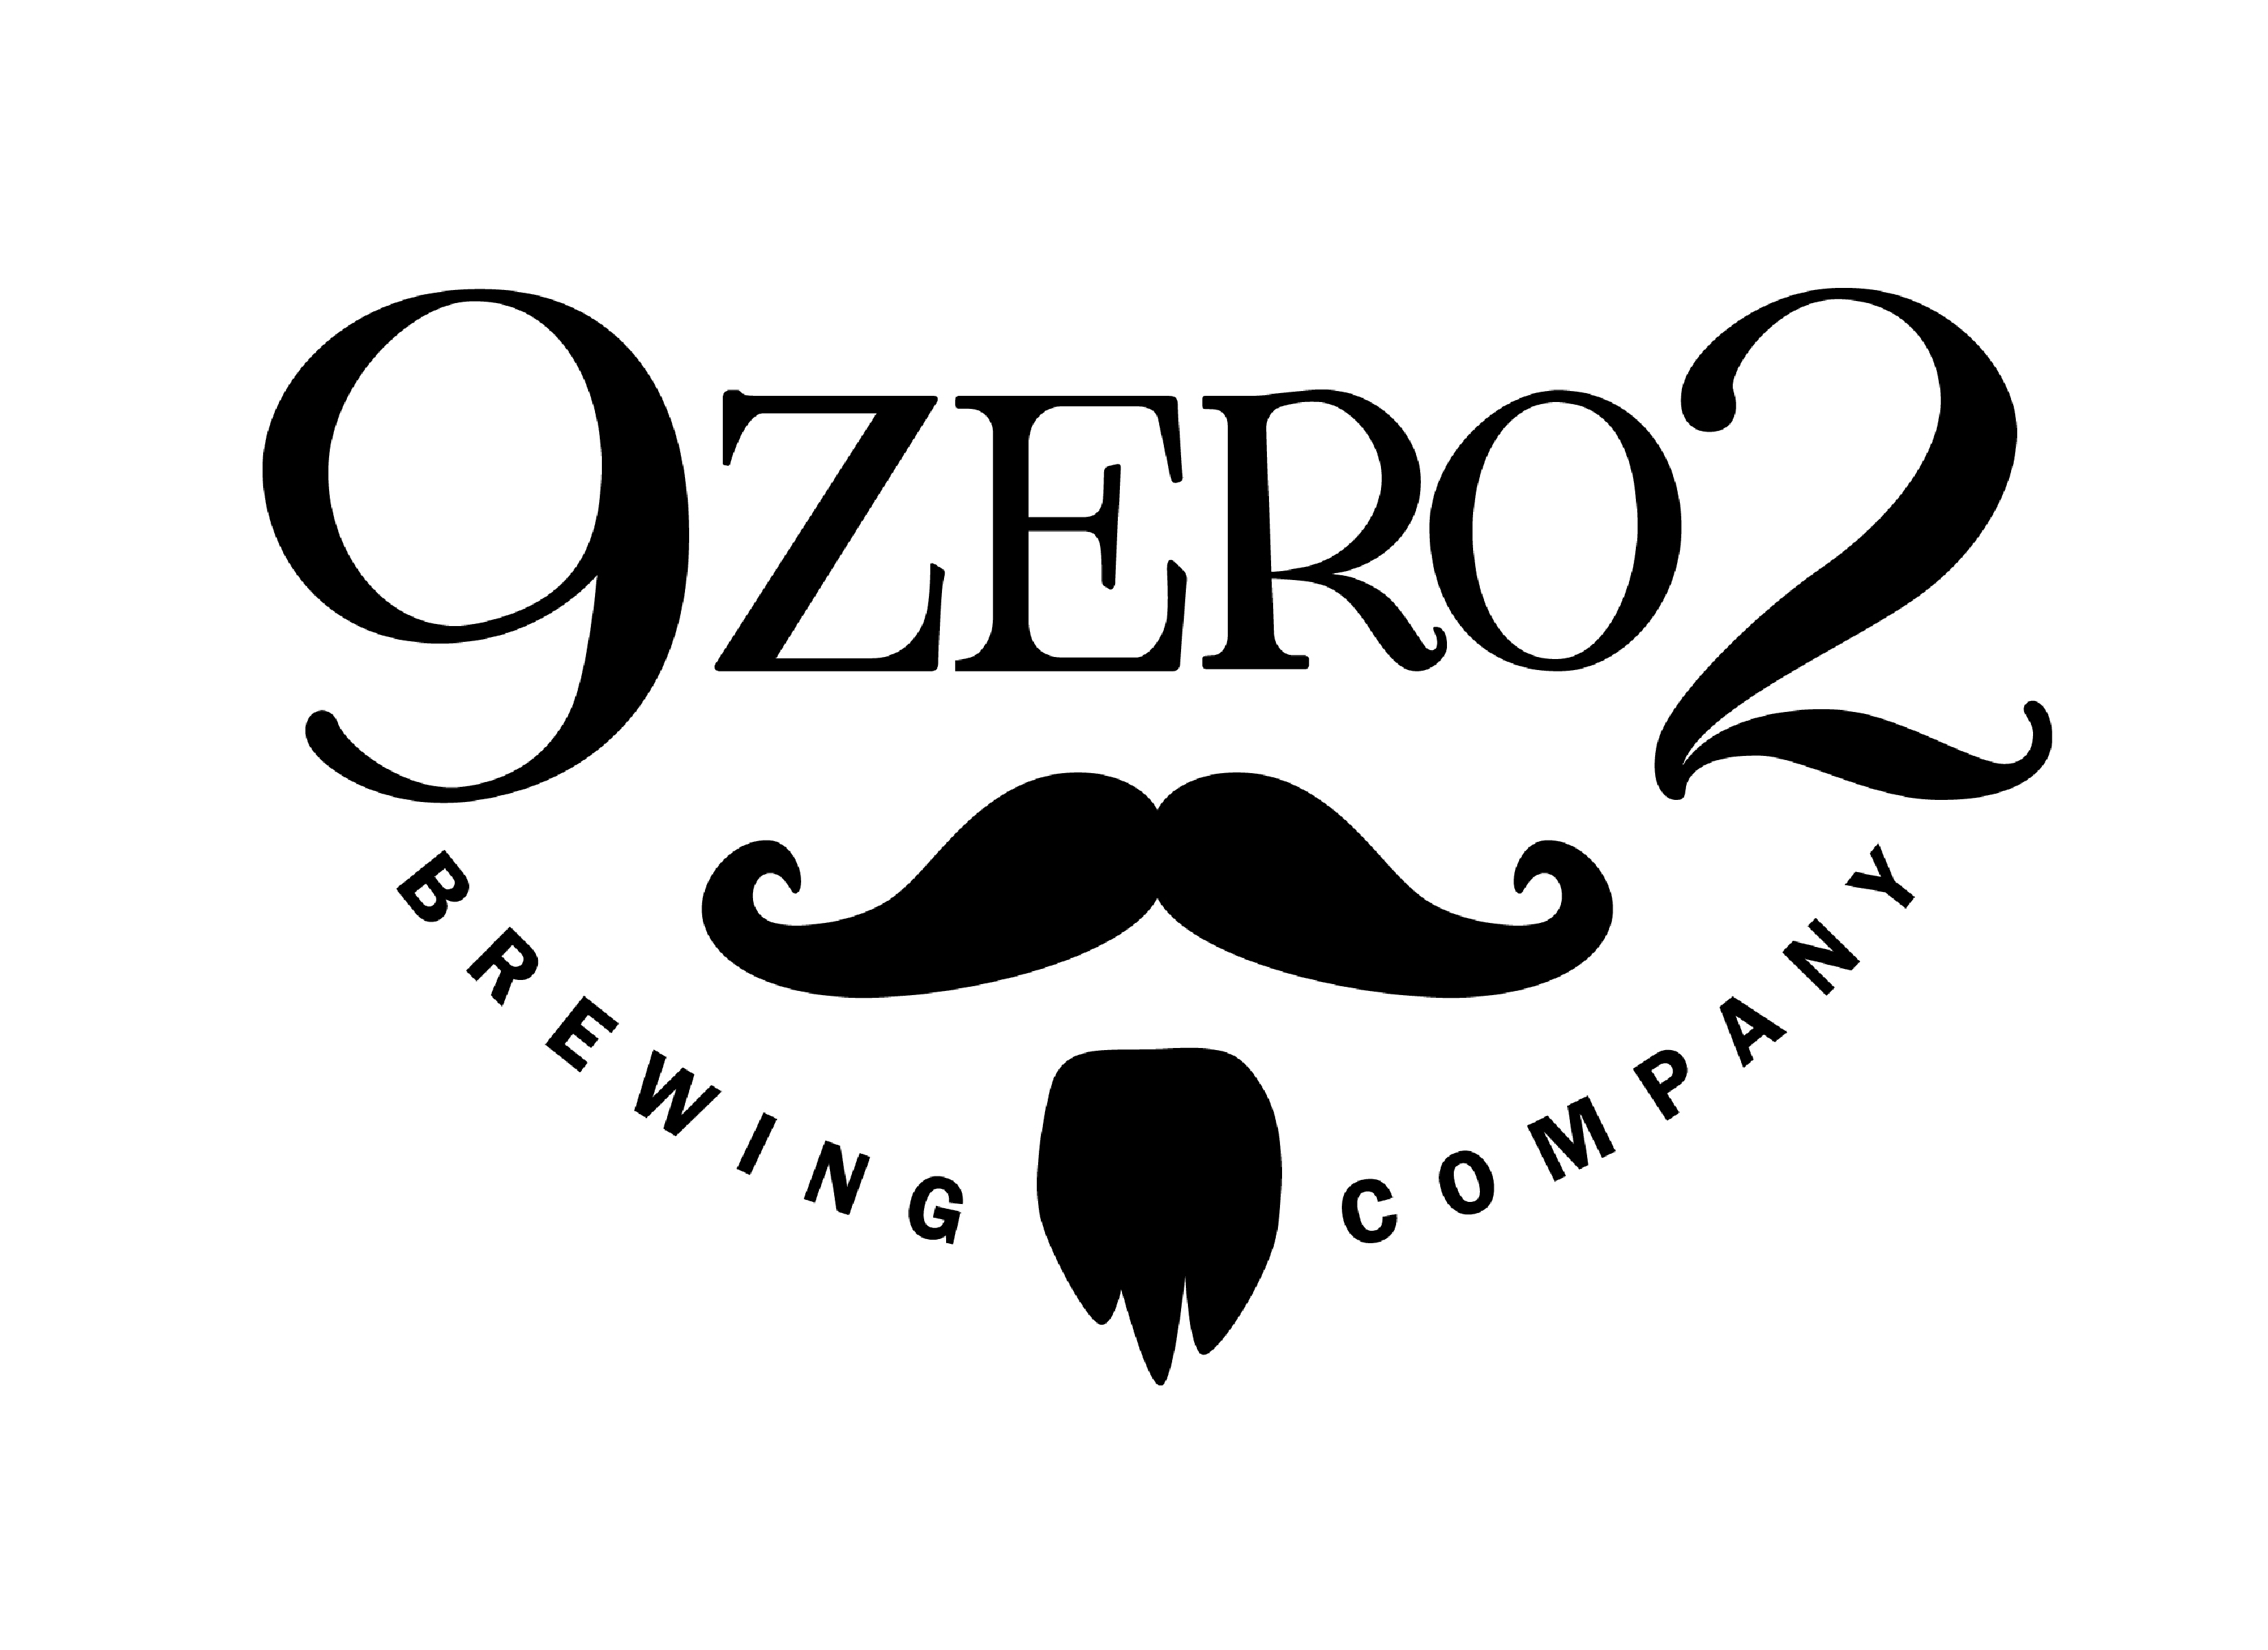 9Zero2 Brewing Company